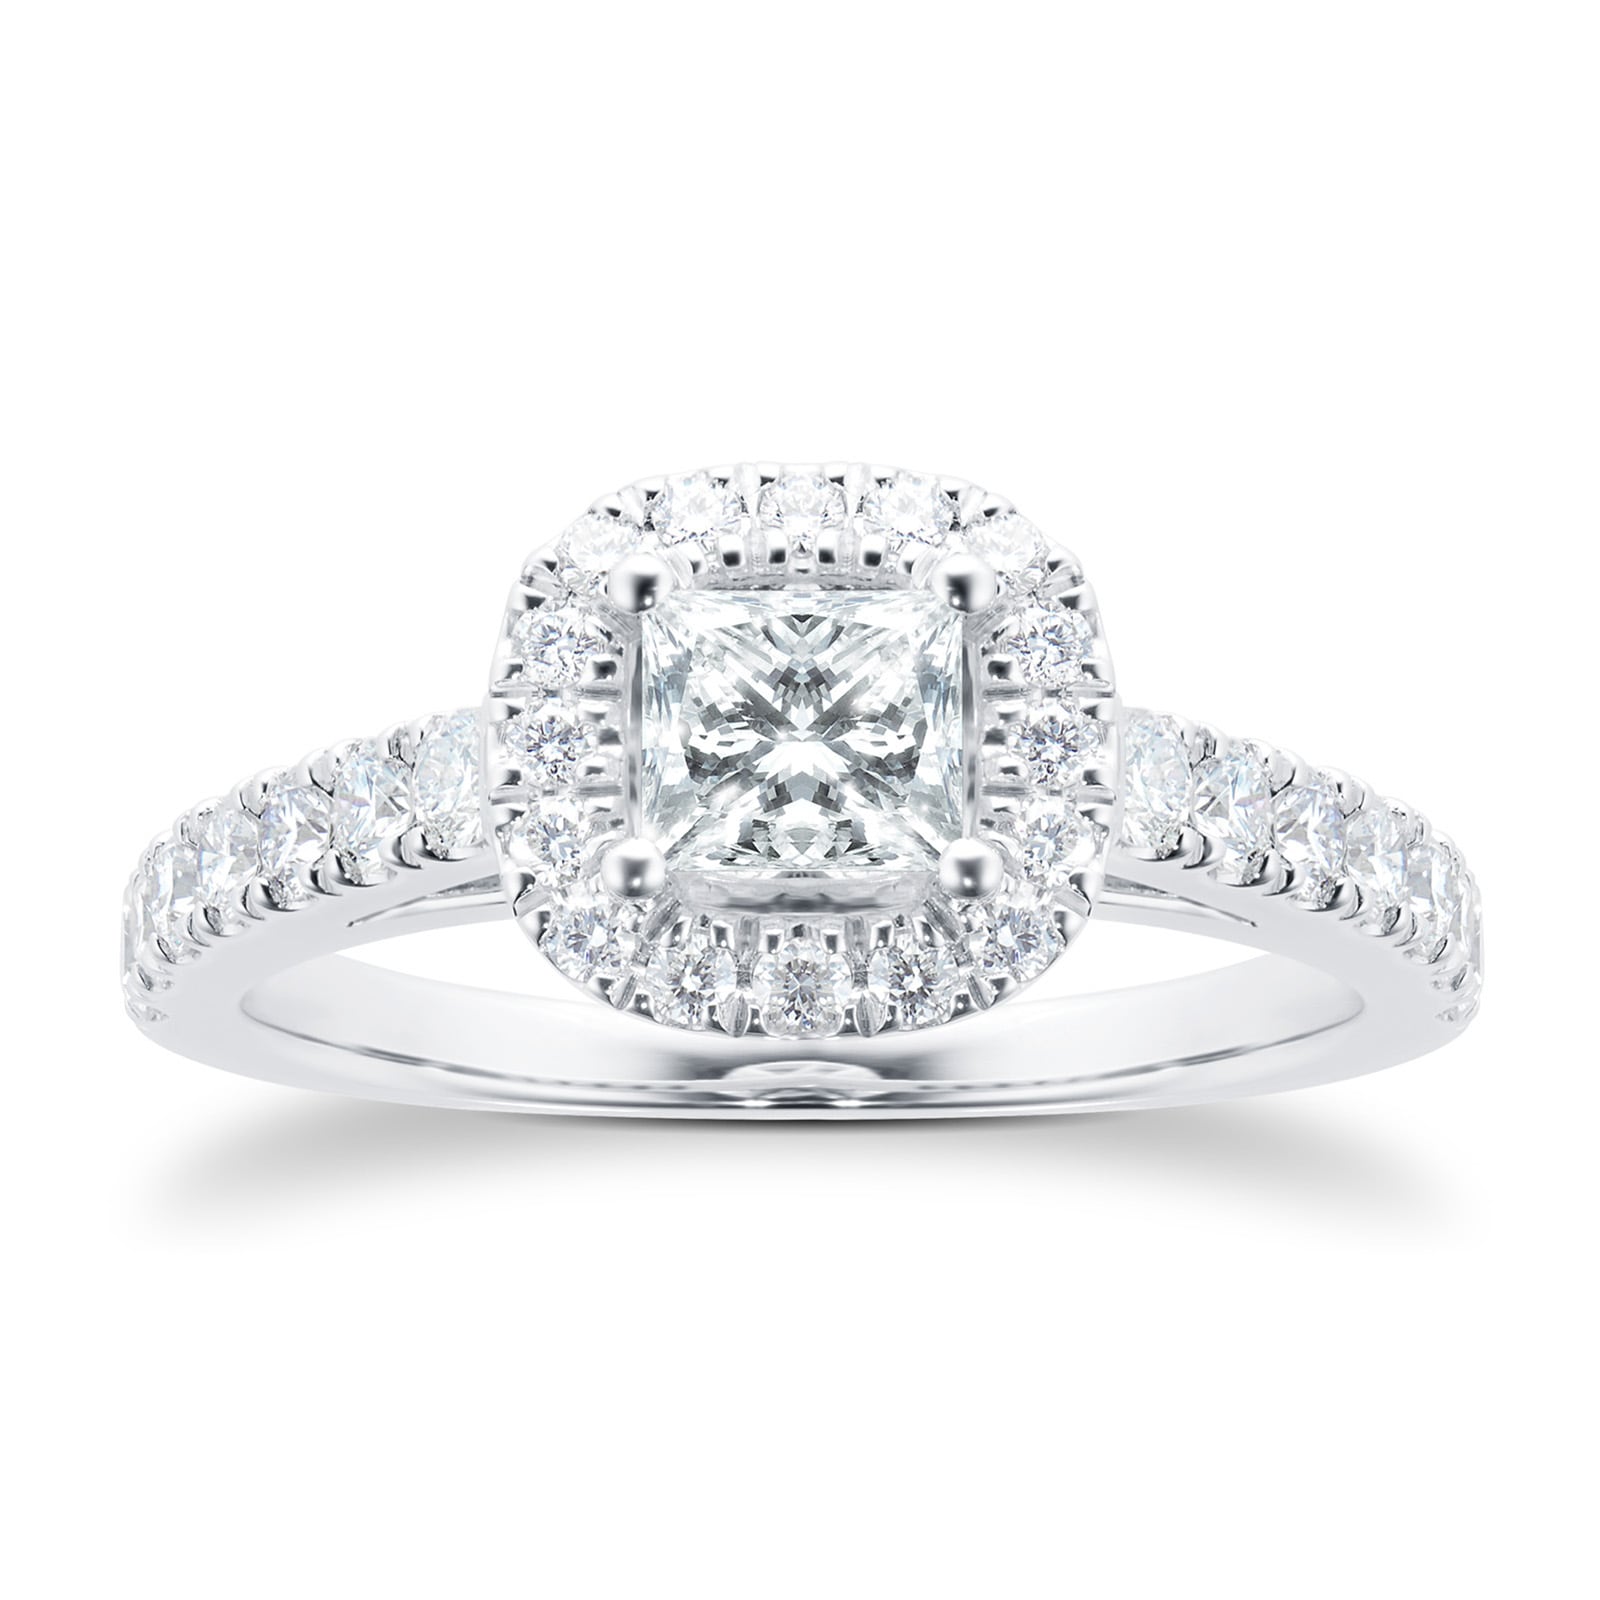 18ct White Gold Princess Cut 1.00 Carat 88 Facet Diamond Ring - Ring Size J